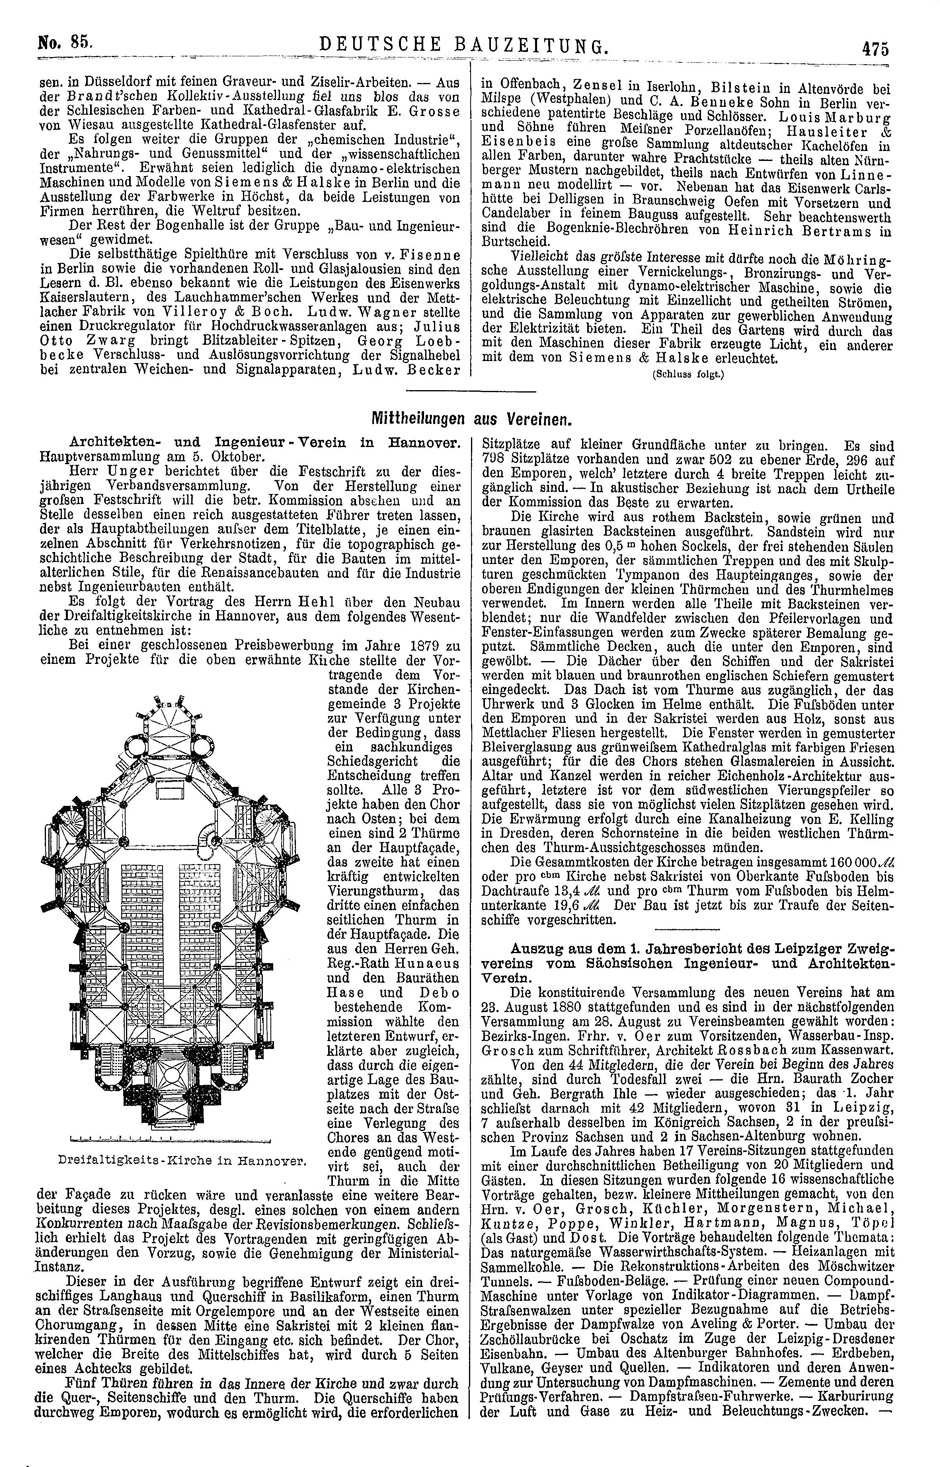 Deutsche Bauzeitung No. 85, Seite 475